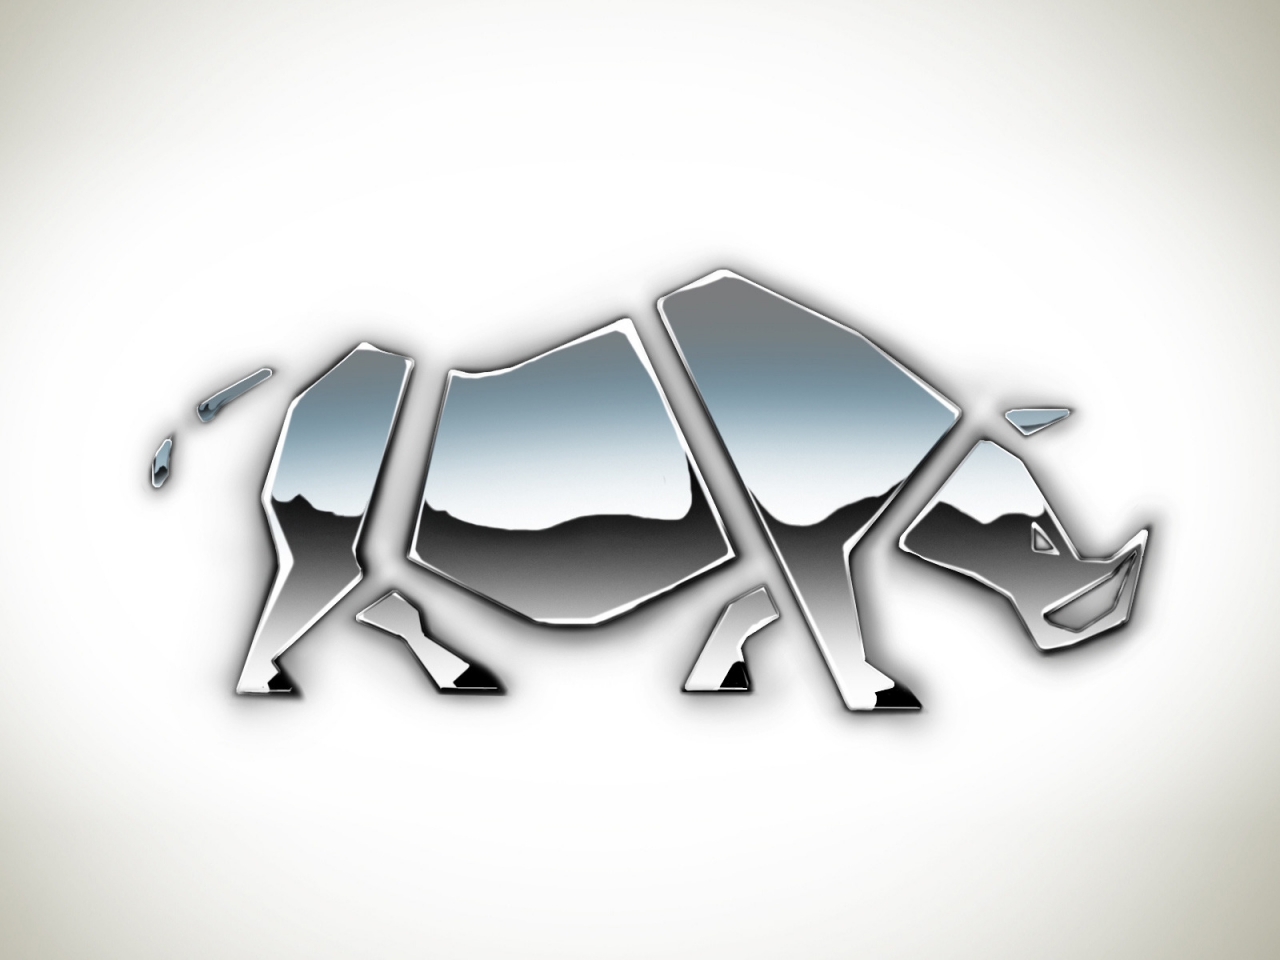 Rhino Shape for 1280 x 960 resolution